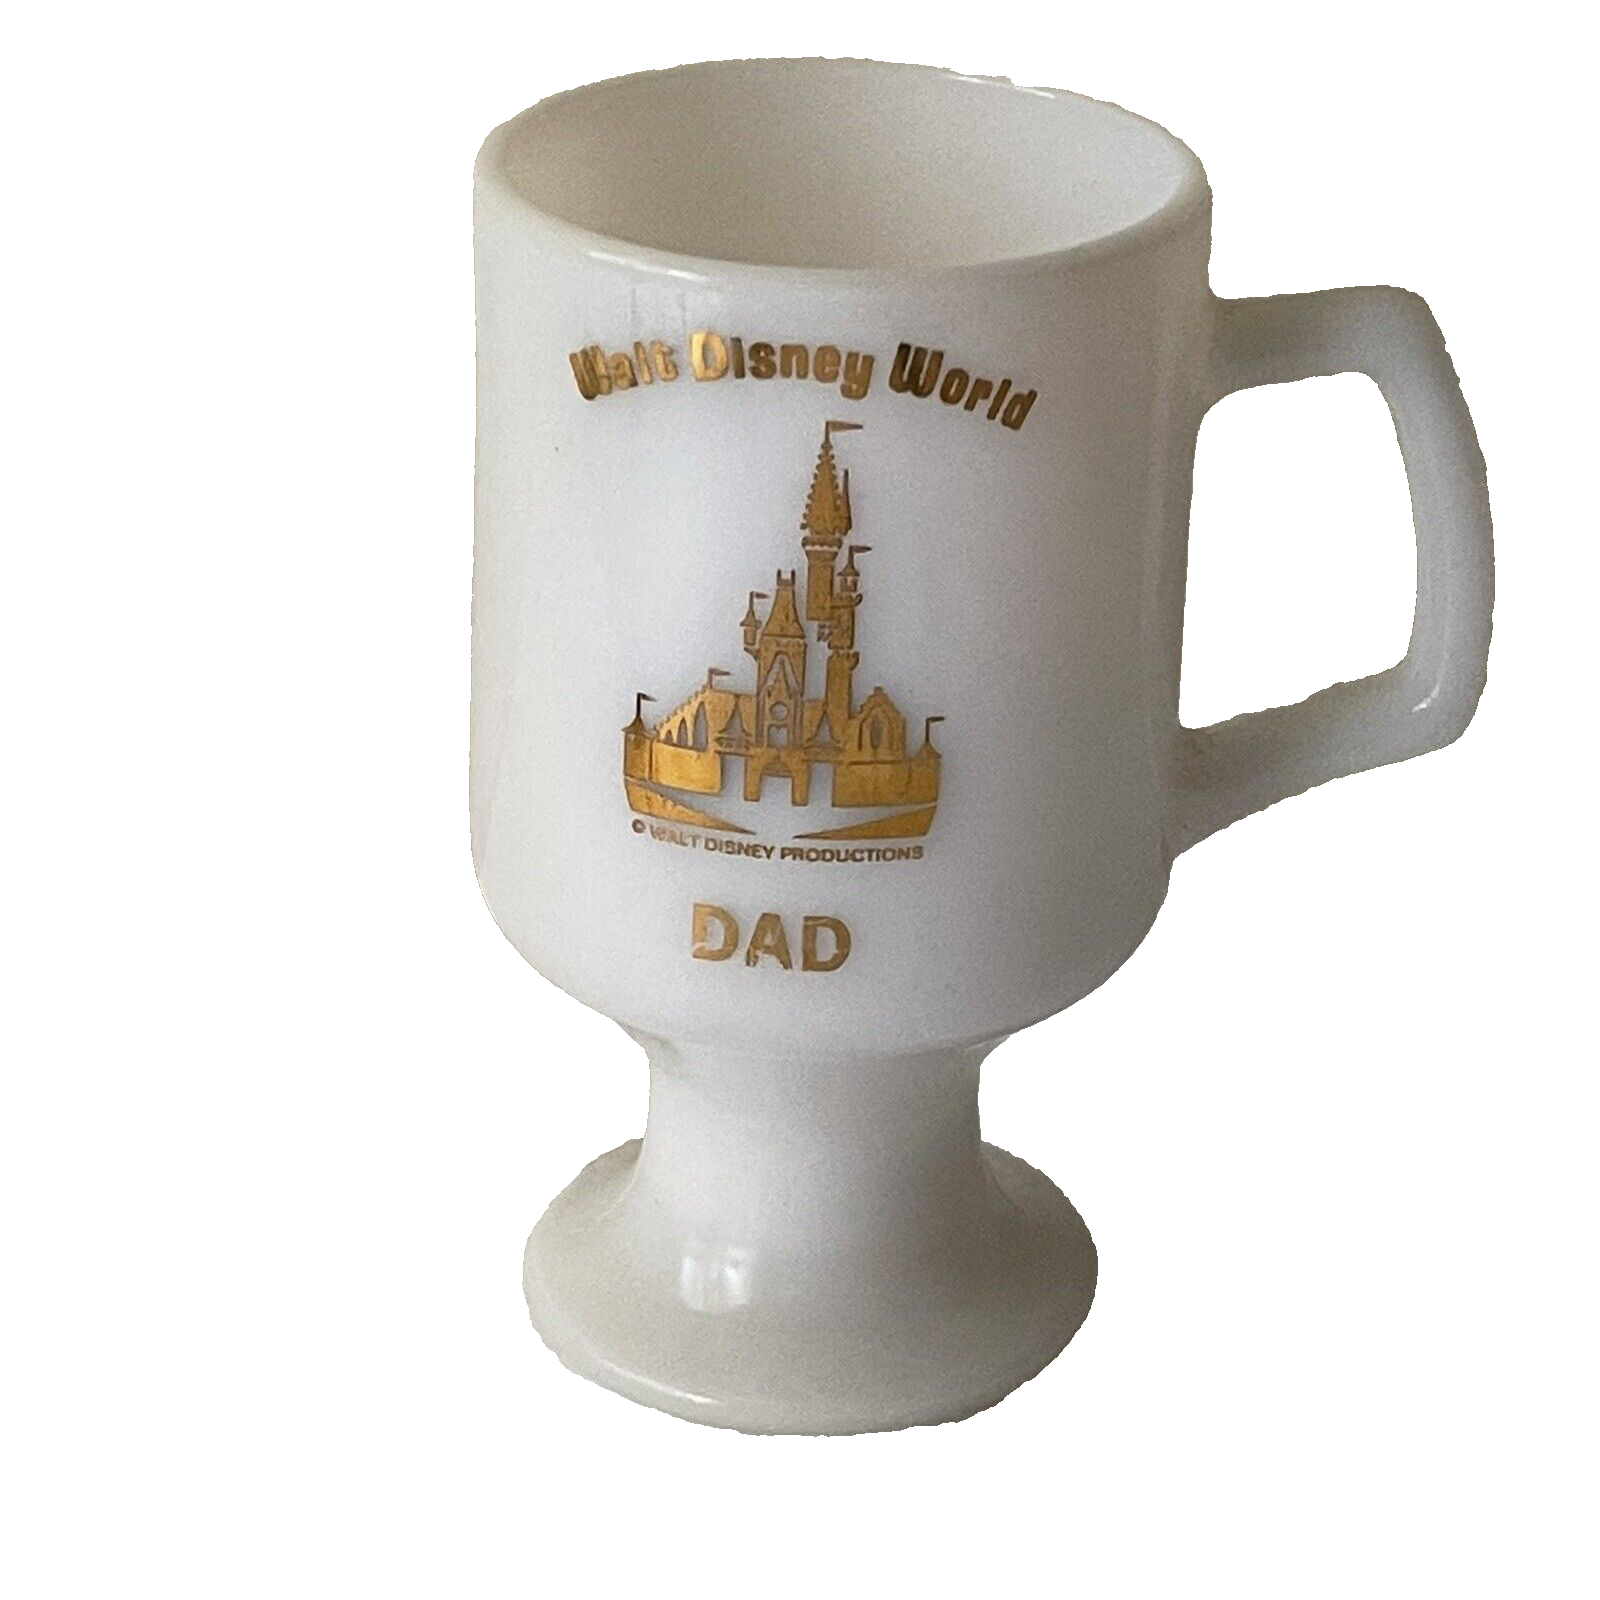 WALT DISNEY WORLD DAD MUG WHITE MILK GLASS PEDESTAL GOLD CASTLE DESIGN VINTAGE - $7.00